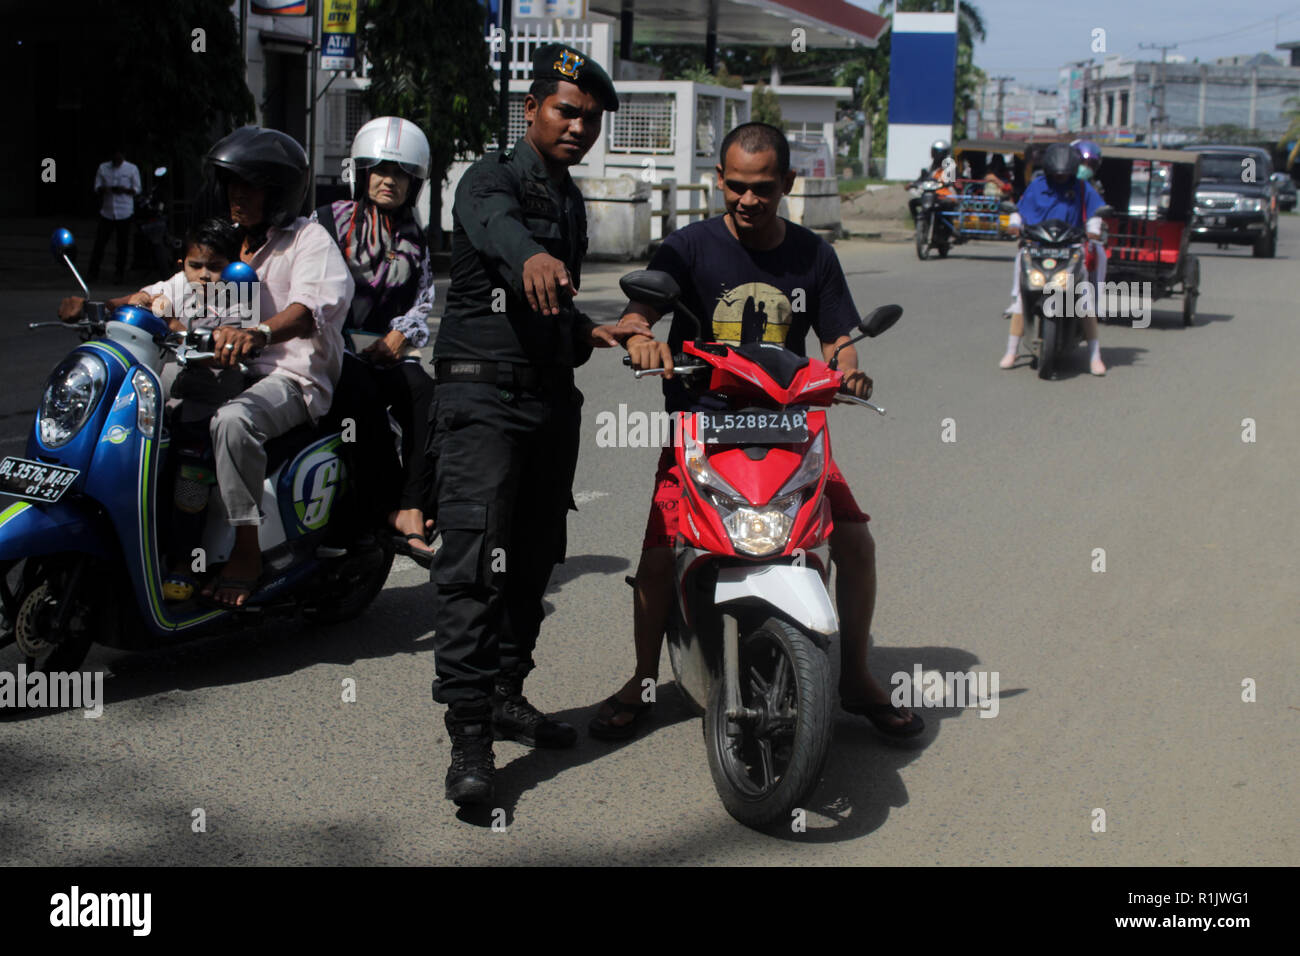 Lhokseumawe, Aceh, Indonesien. 13 Nov, 2018. Die islamische Scharia Polizeioffizier (Wilayatul Hisbah) gesehen stoppen ein Kraftfahrer einen Kurzschluß tragen während des routinemäßigen Razzien in Lhokseumawe. islamische Scharia Polizisten (Wilayatul Hisbah) bieten sarongs Für diejenigen, die die islamische Scharia durch Gewalt in der Stadt Lhokseumawe verletzt, Aceh ist die einzige Provinz in Indonesien mit der größten Bevölkerung von Muslimen in der Welt, der die islamische Scharia wie Ausschuss caning implementiert und die Durchführung von routinemäßigen Raids Für diejenigen, die Fest für Frauen und kurze Hosen für Männer gekleidet sind. (Credit Ima Stockfoto